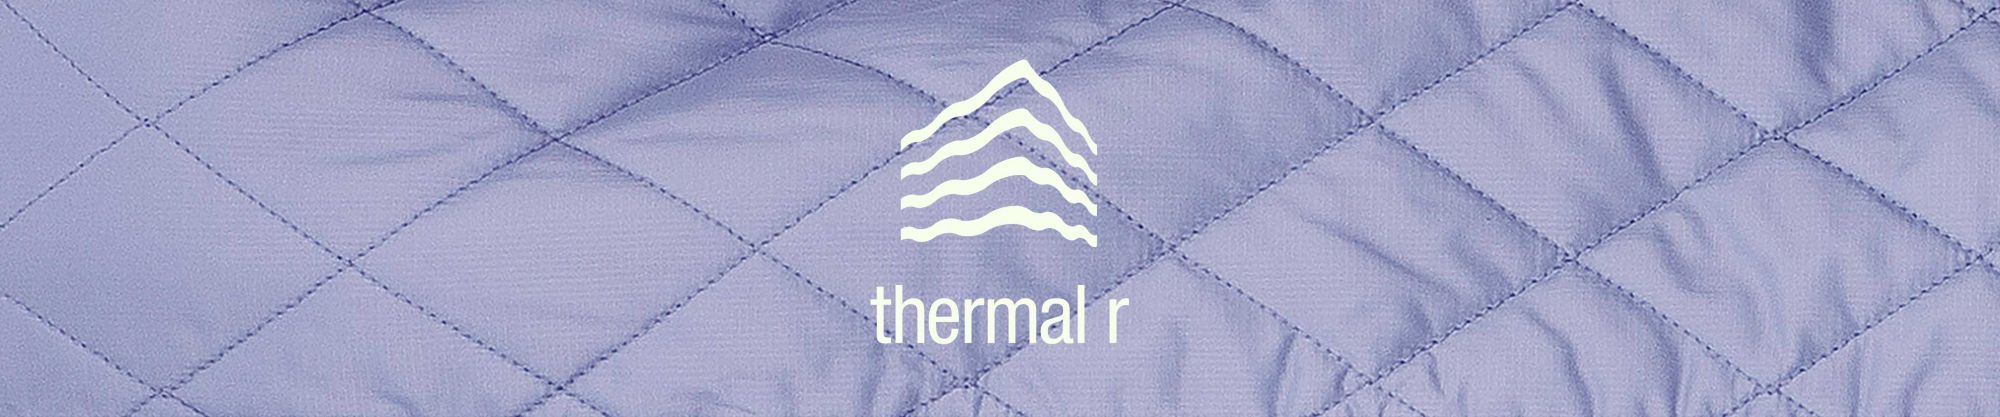 Thermal R logo